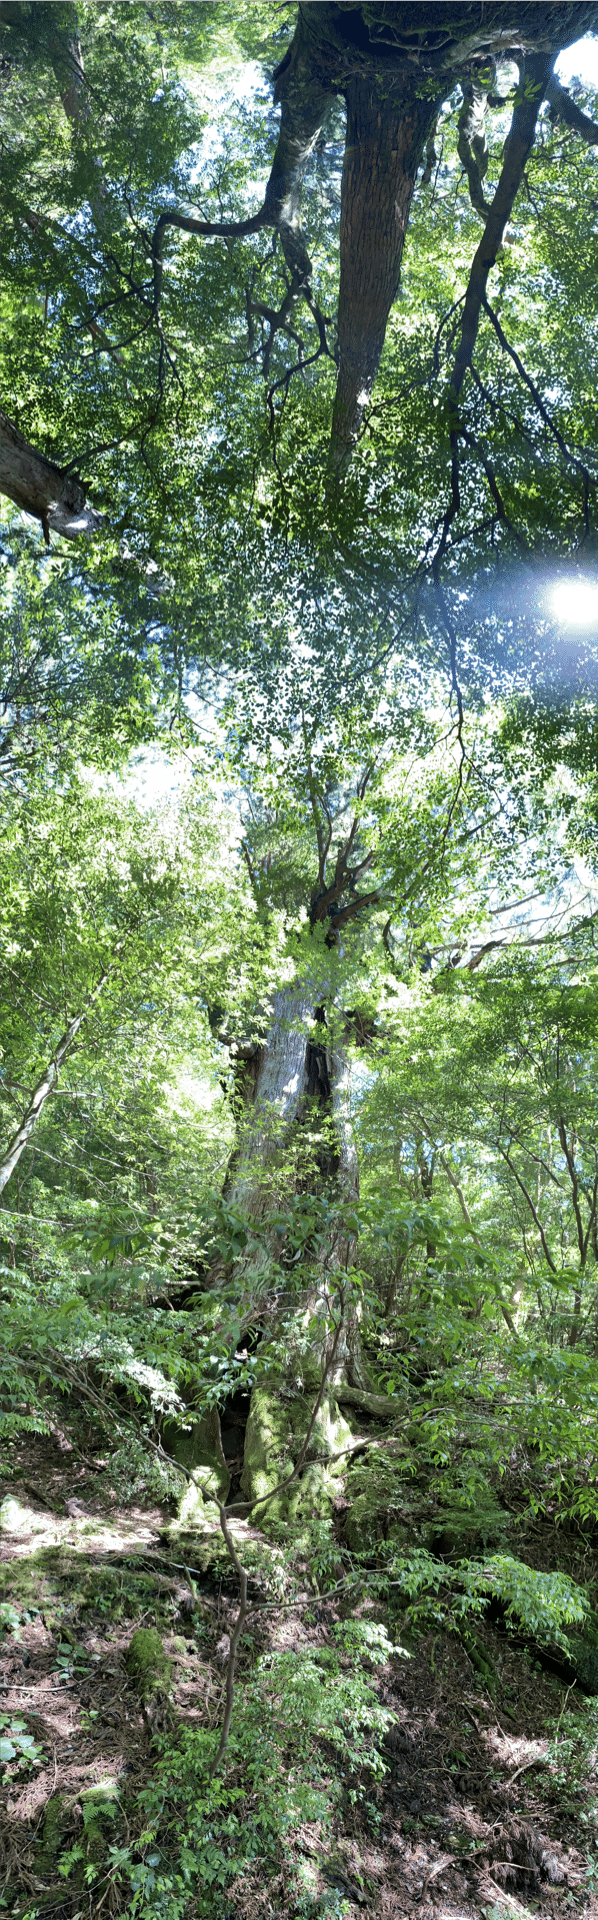 縄文杉。1,000年以上の樹林がある木が今では数少ないのが非常に残念です。